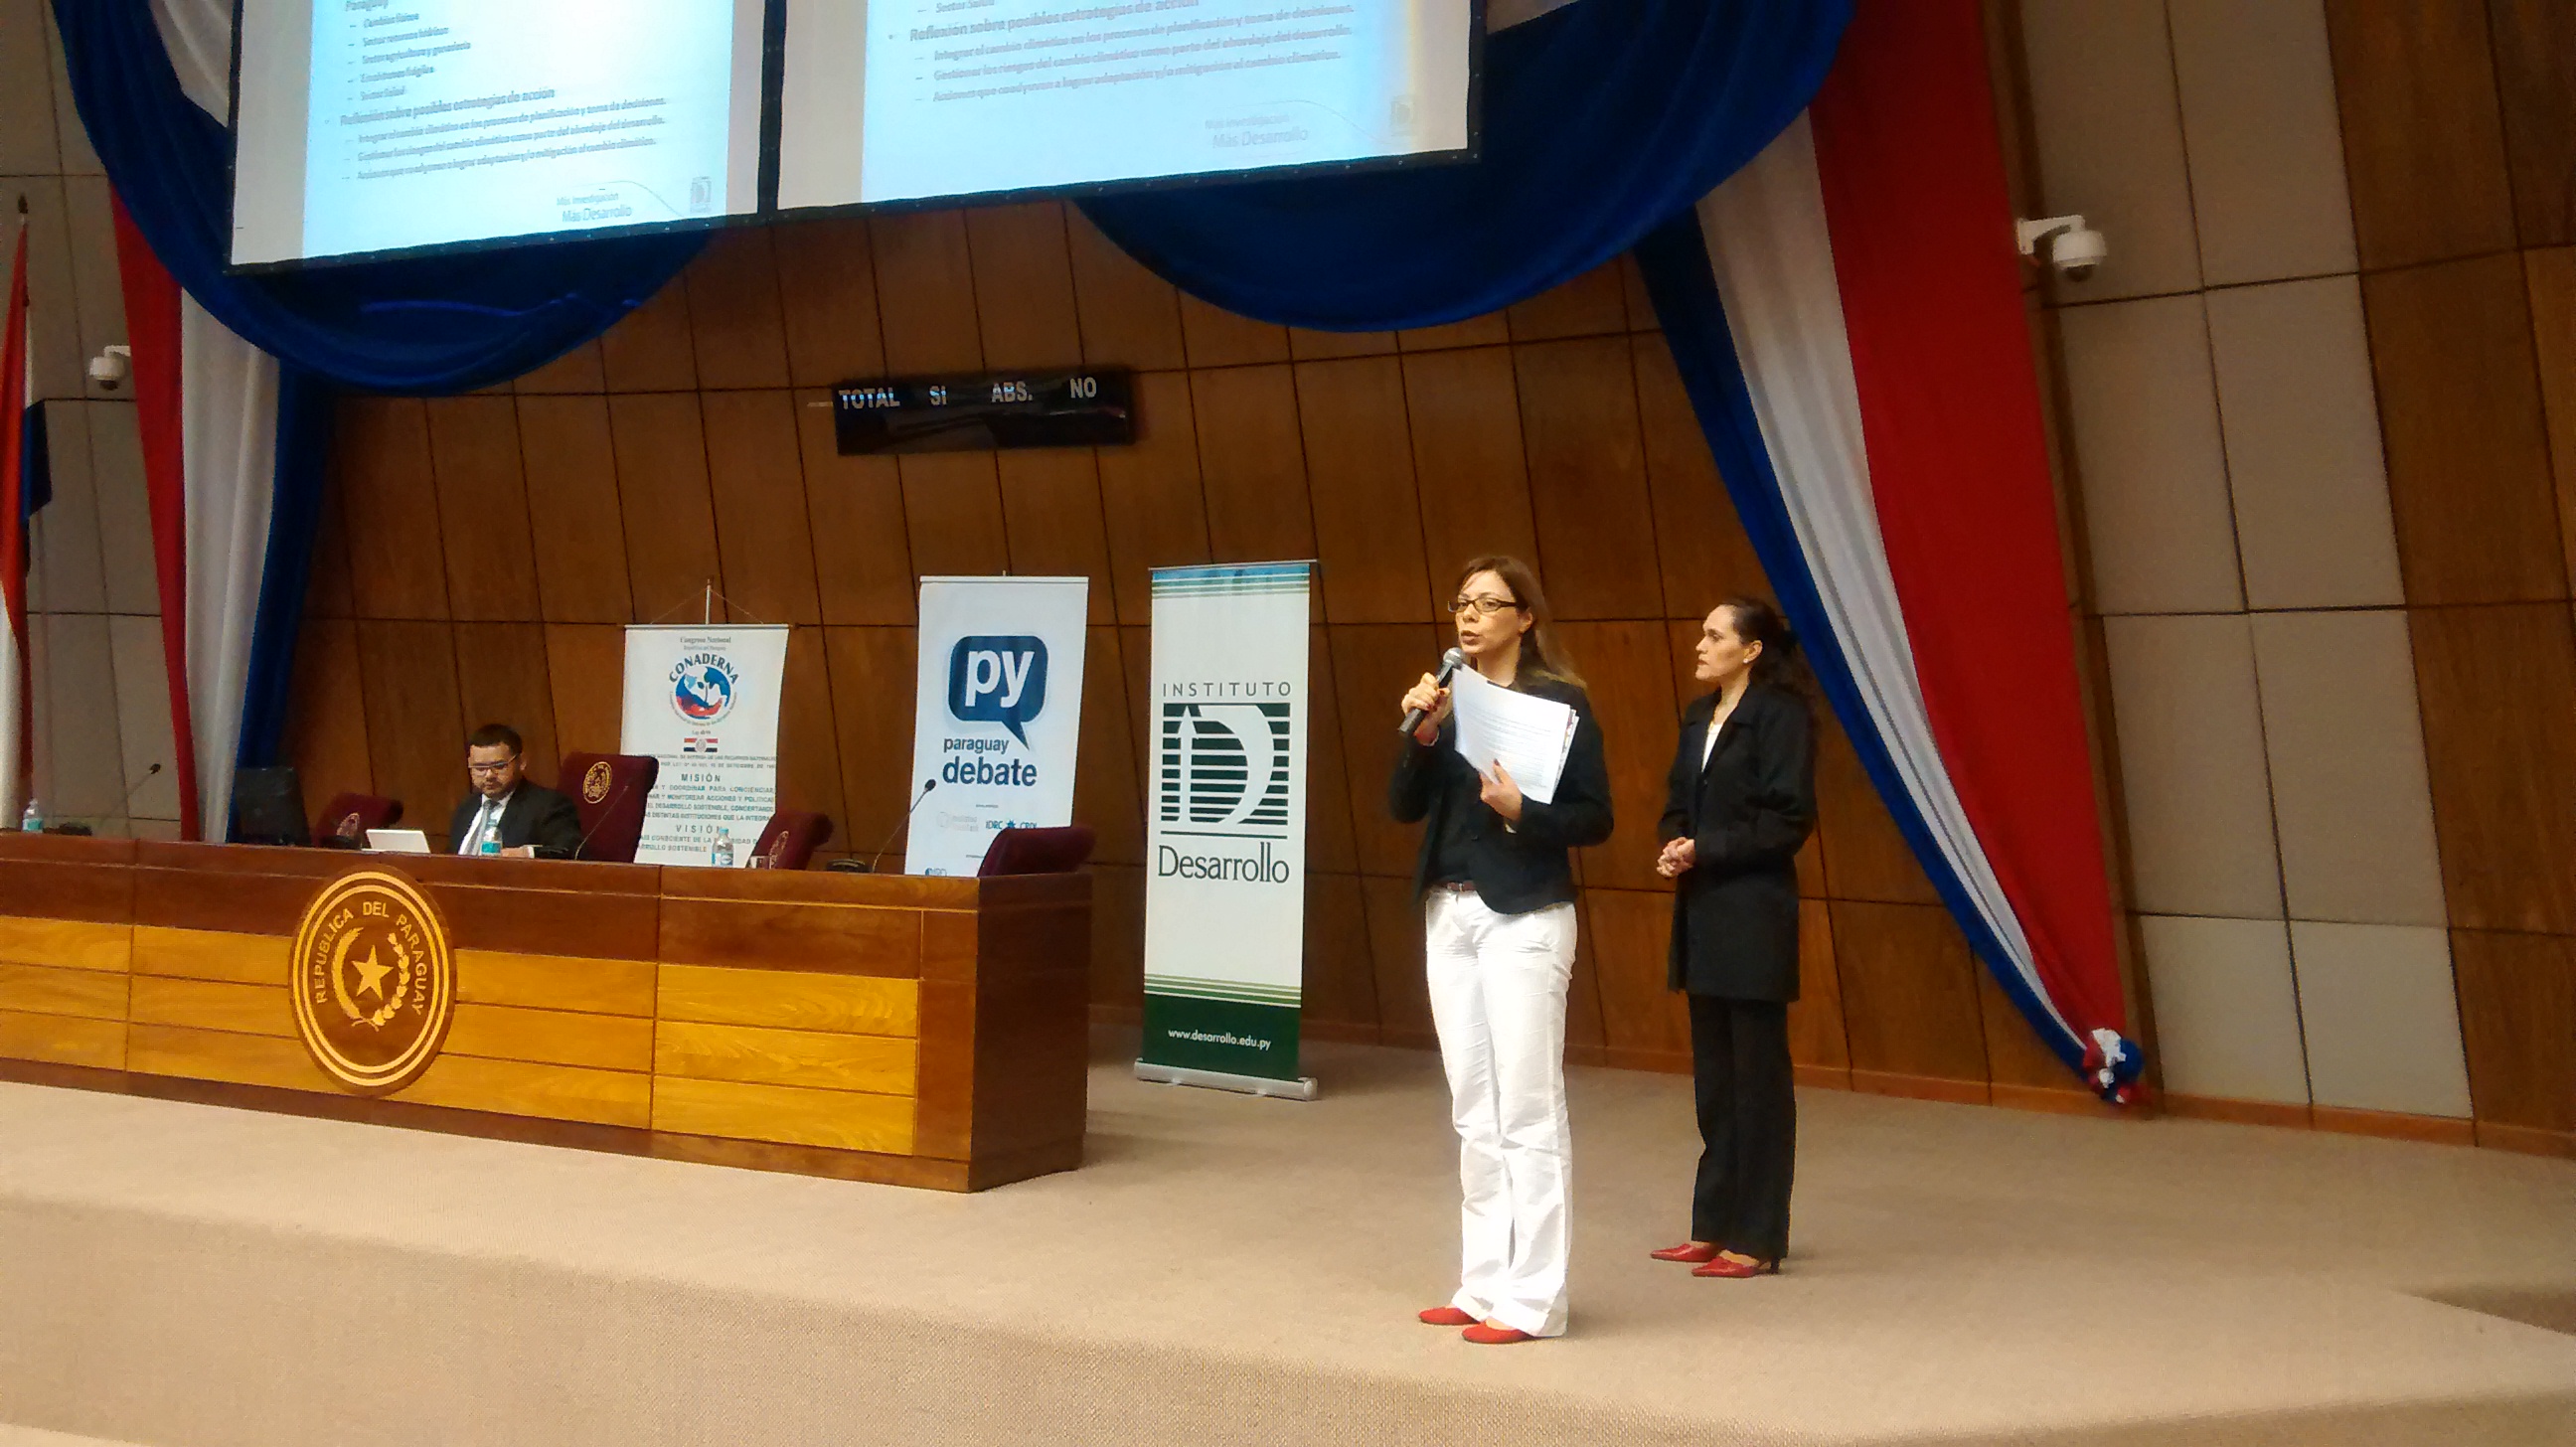 Las investigadoras del Instituto Desarrollo, Rossana Scribano y Carmiña Soto, en la presentación de resultados del análisis de prioridades sobre temas relacionados al cambio climático